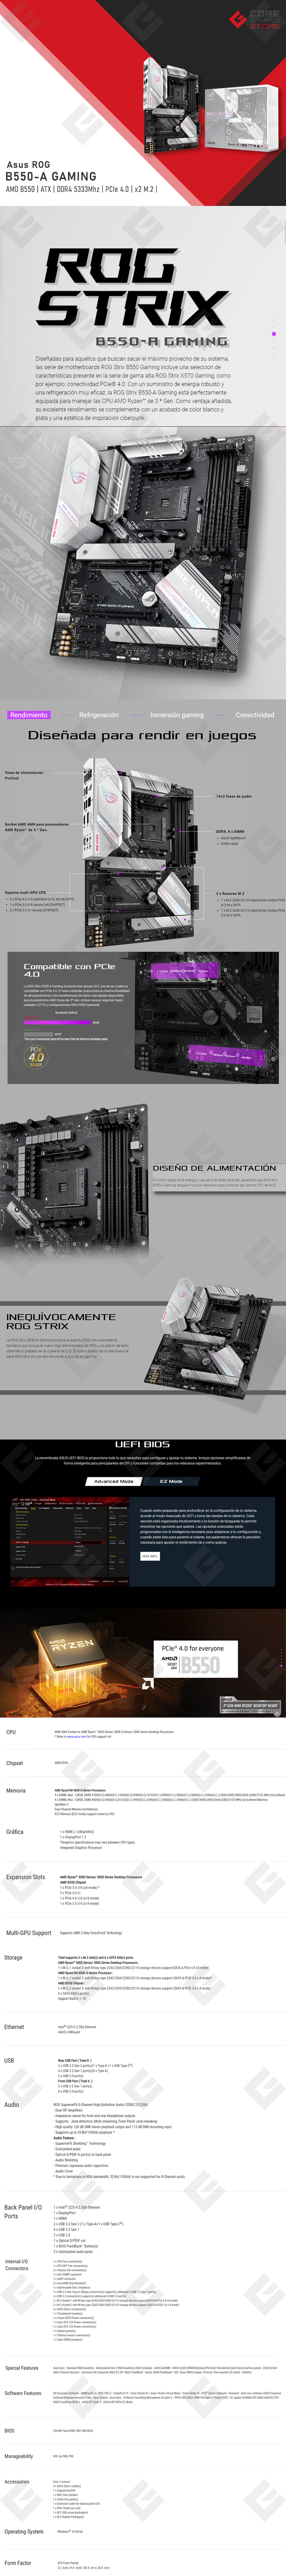 Tarjeta Madre Asus ROG Strix B550-A Gaming, ATX, Socket AM4, AMD Ryzen 5000 Ready, PCIe 4.0, 128GB DDR4 5100Mhz, Aura Sync, USB 3.2 Gen 2 Type-C, BIOS FlashBack